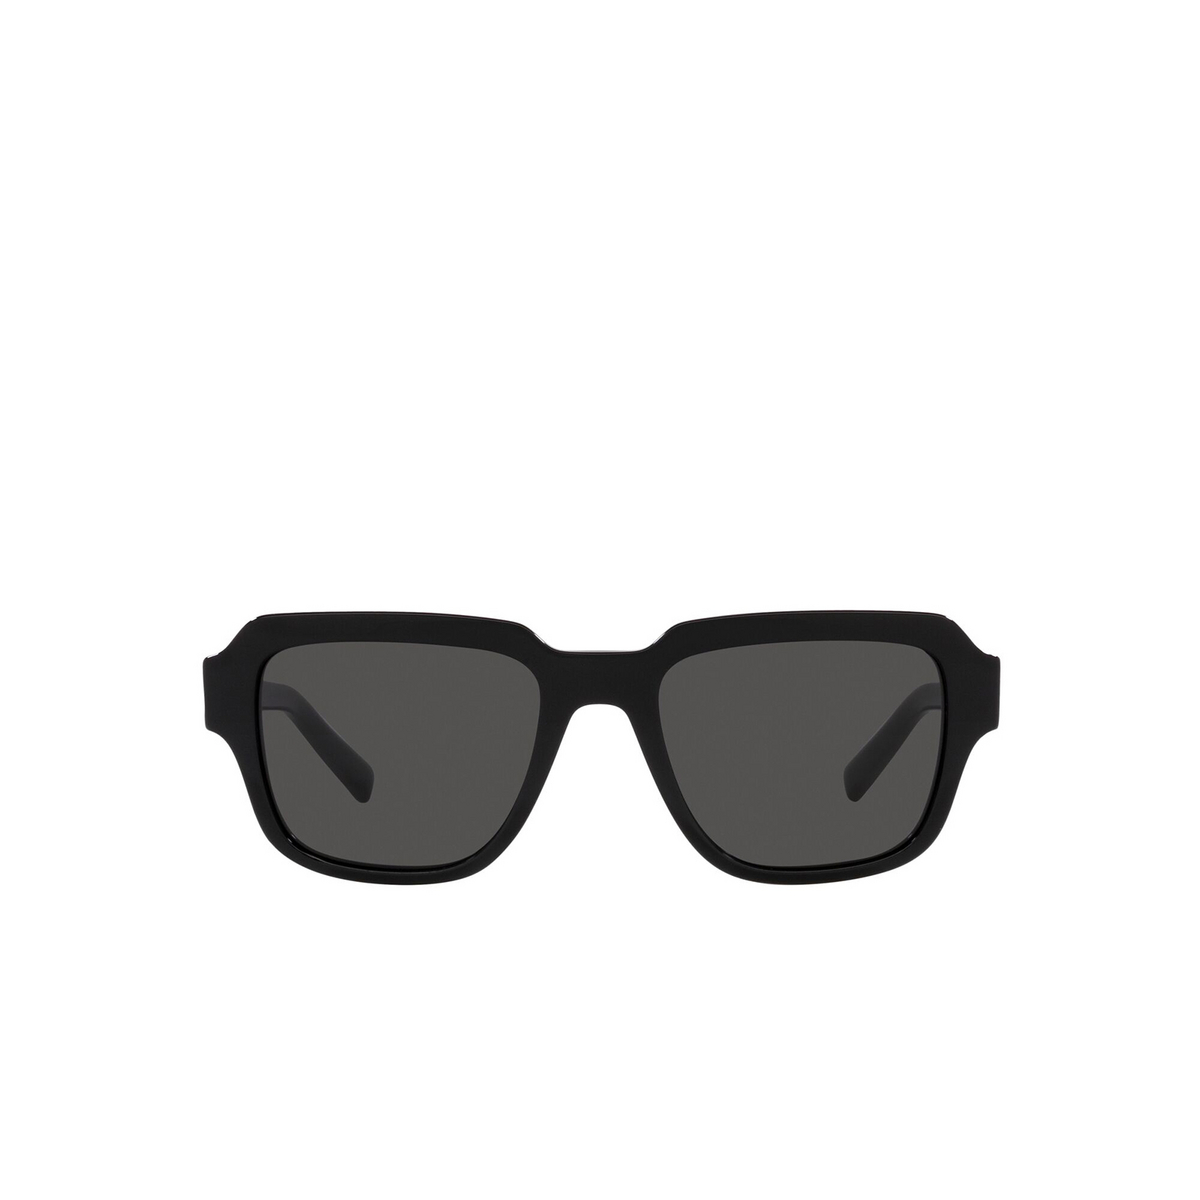 Dolce & Gabbana® Square Sunglasses: DG4402 color Black 501/87 - front view.